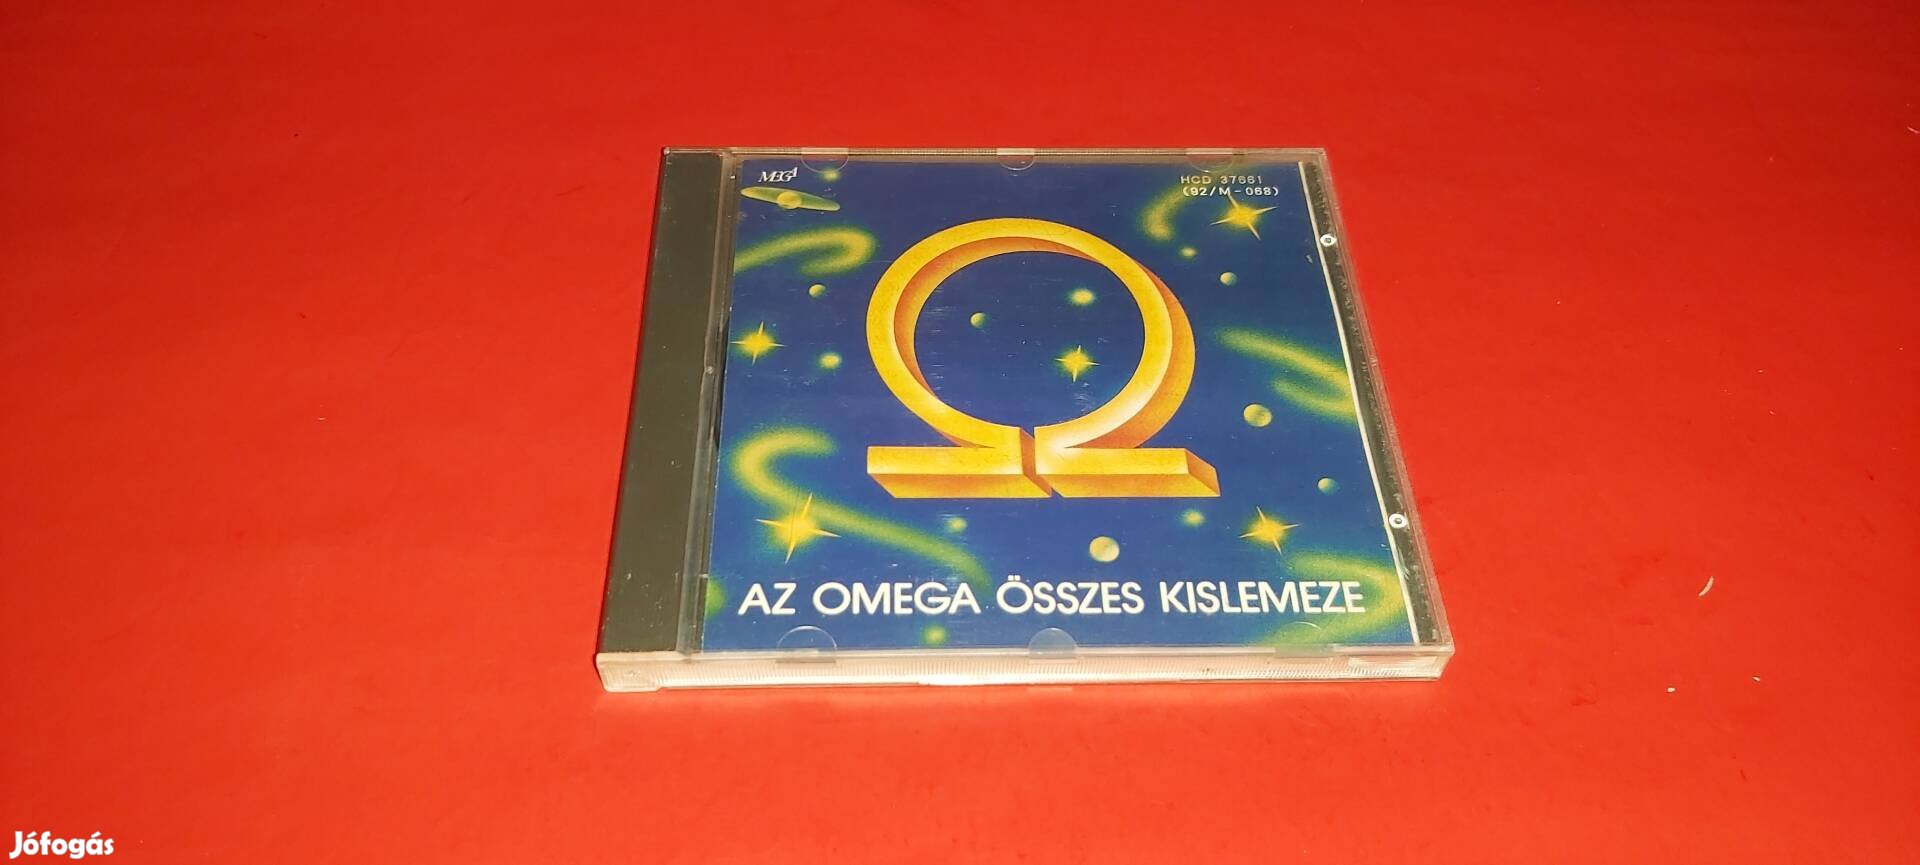 Omega Az Omega összes kislemeze Cd 1992